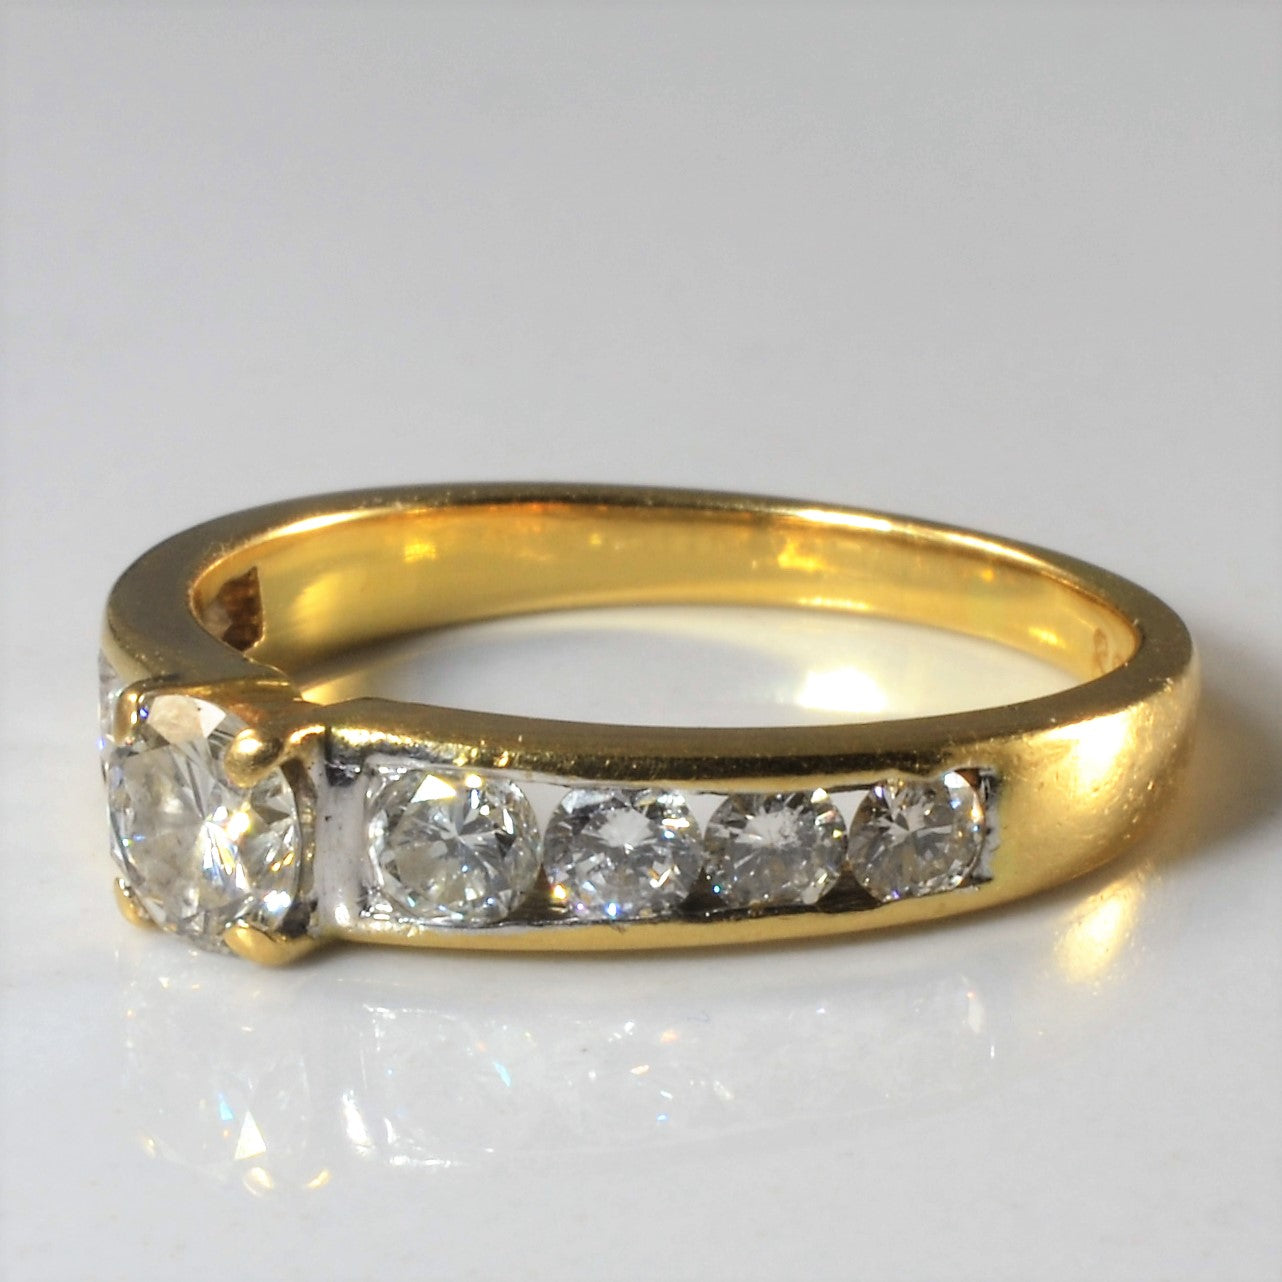 Low Profile Channel Set Diamond Engagement Ring | 0.68ctw | SZ 6.75 |